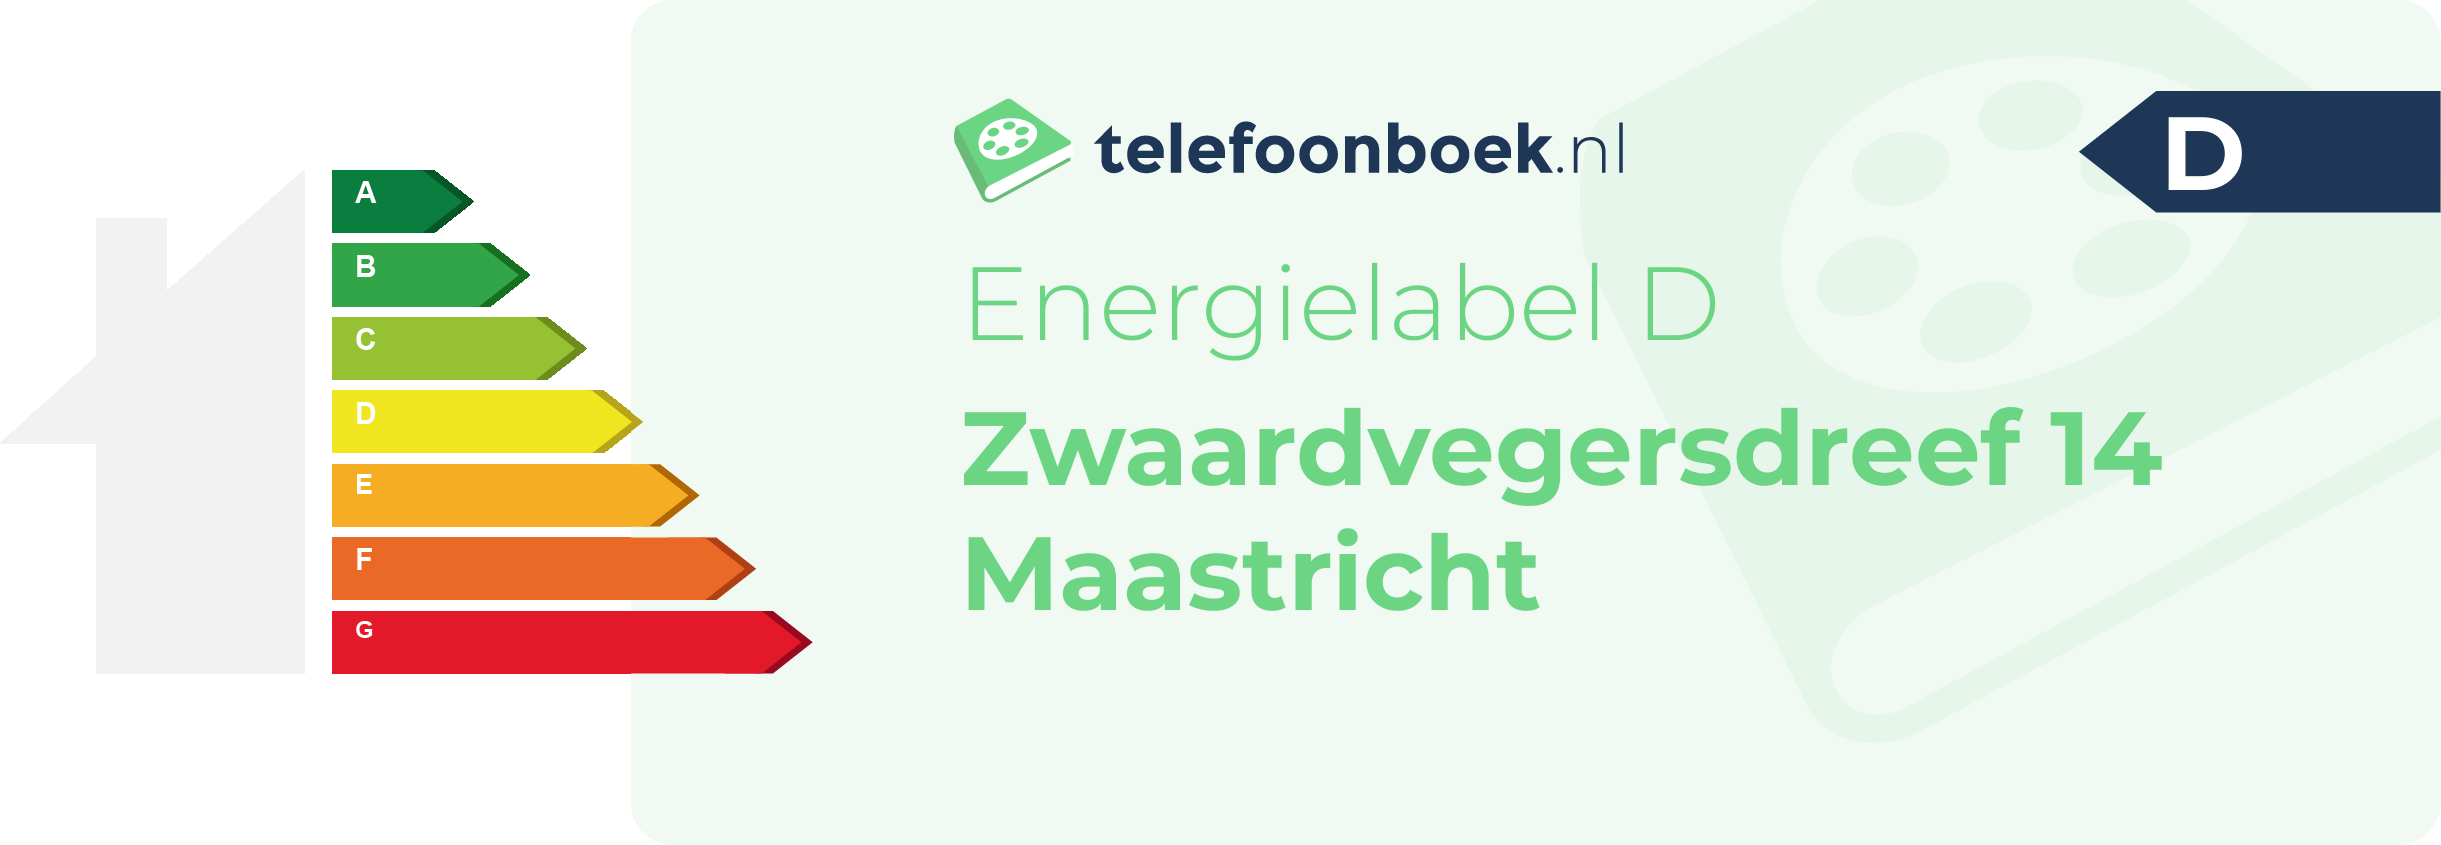 Energielabel Zwaardvegersdreef 14 Maastricht